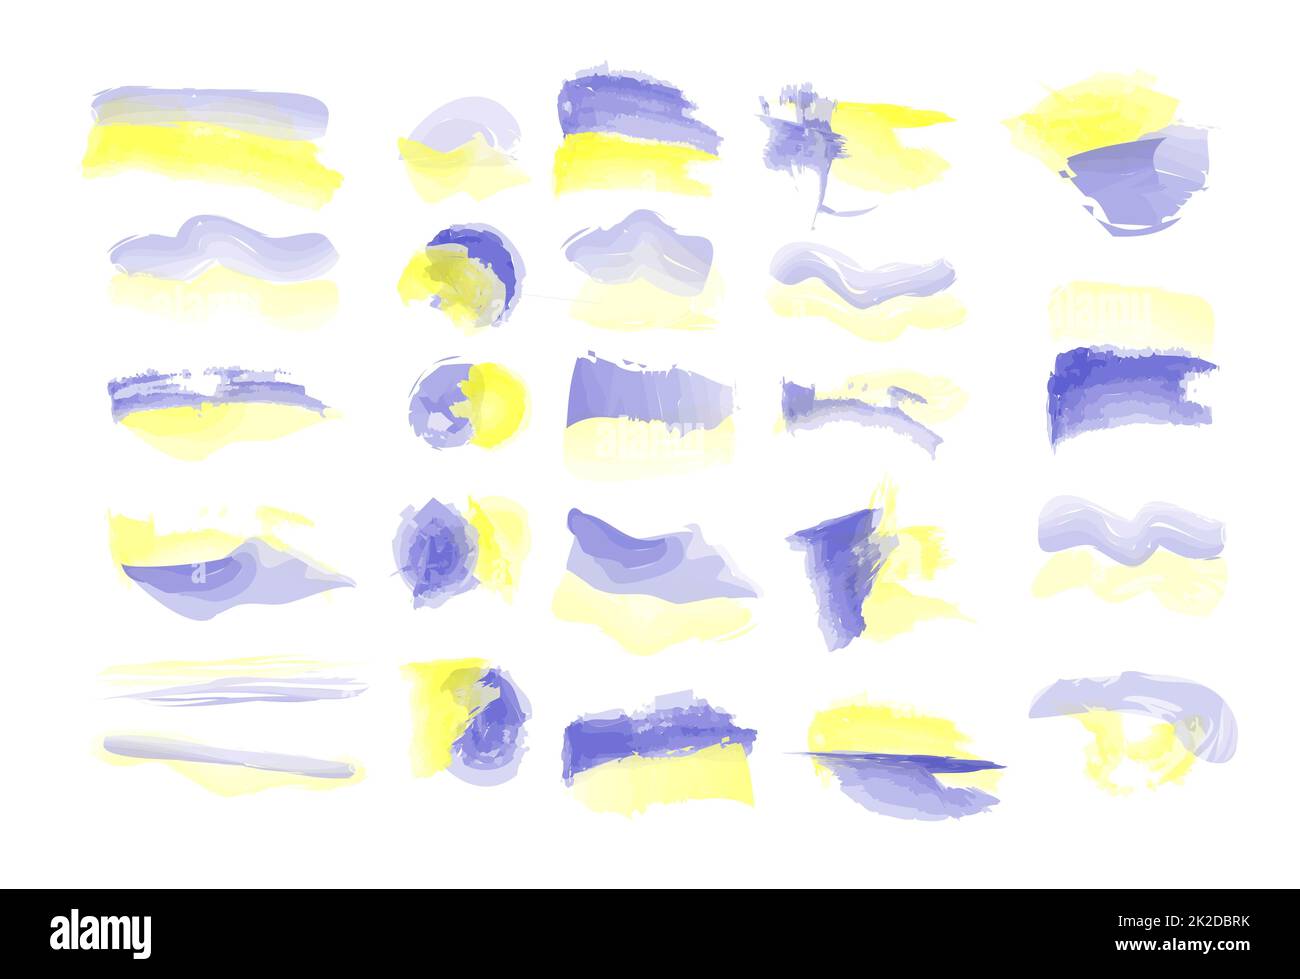 Arrière-plans d'aquarelle vectorisés. Arrière-plan bleu-jaune. Couleurs du drapeau ukrainien. Aquarelles aux couleurs bleu-jaune de l'Ukraine Banque D'Images